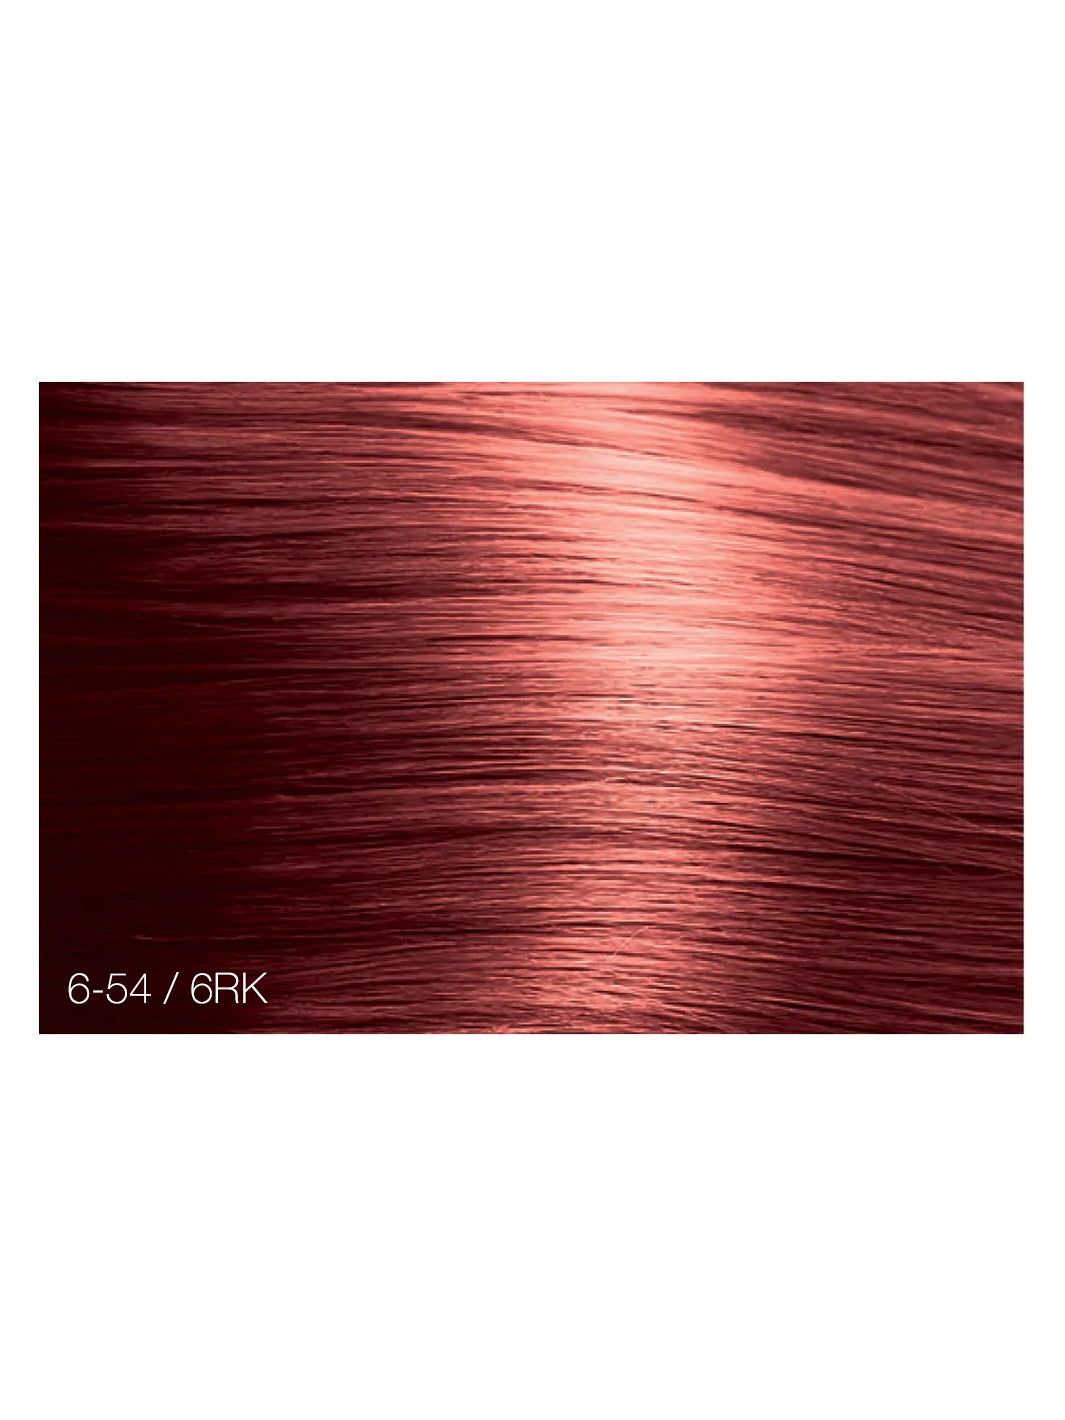 Calura Permanent Red Copper - 54/RK